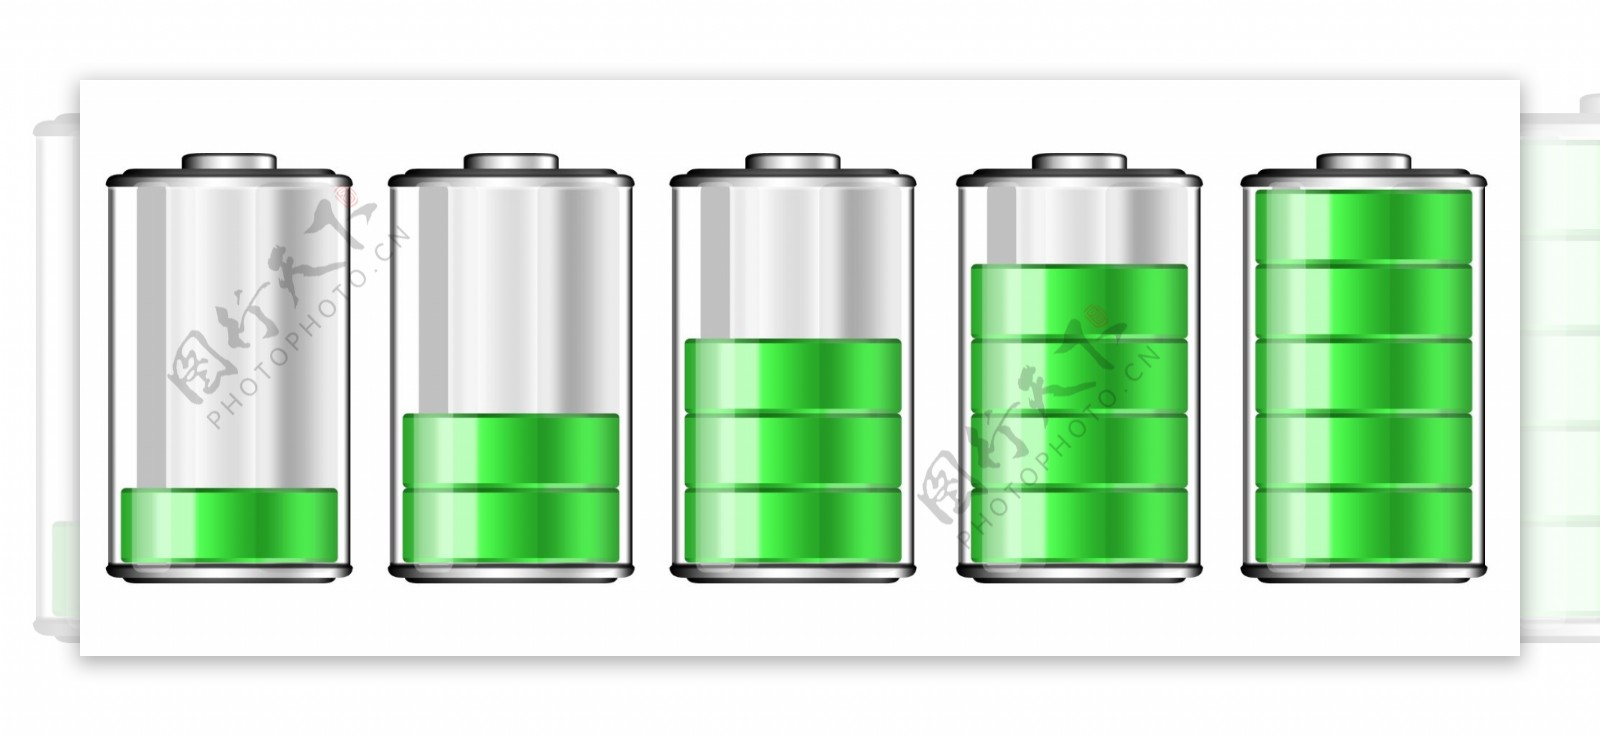 电池符号素材图片